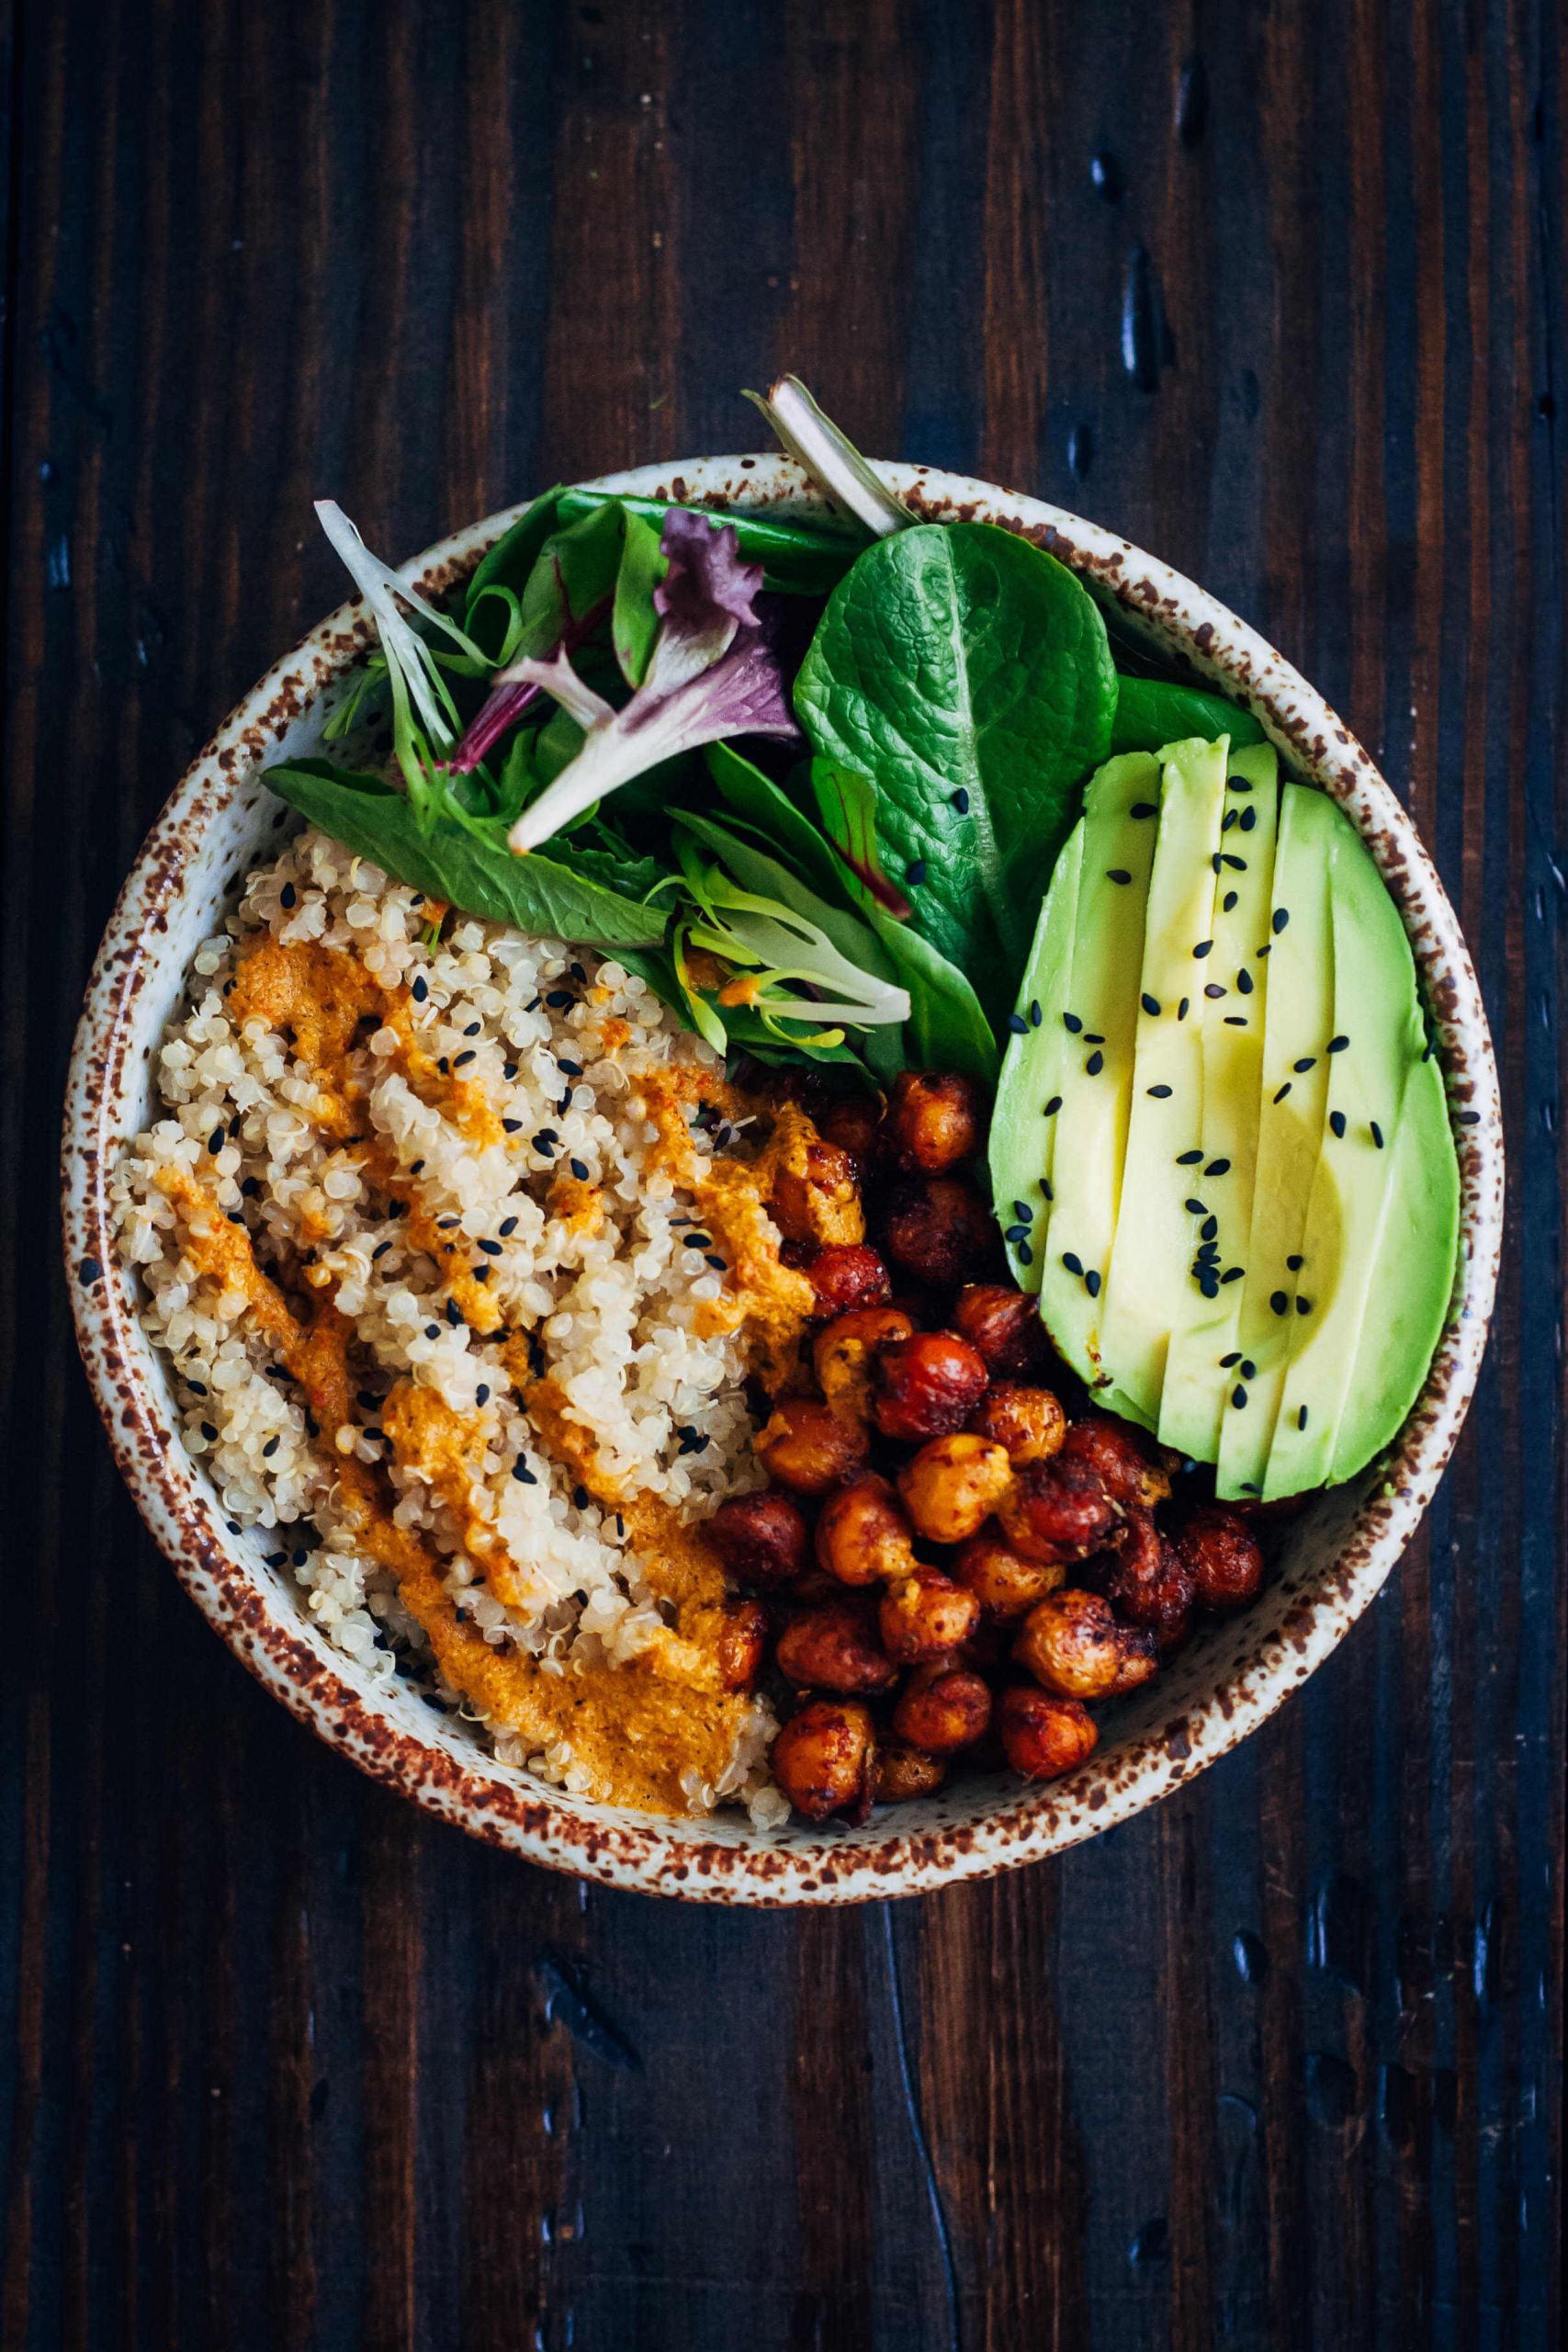 Easy Vegan Recipes For Dinner
 25 Vegan Dinner Recipes Easy Healthy Plant based